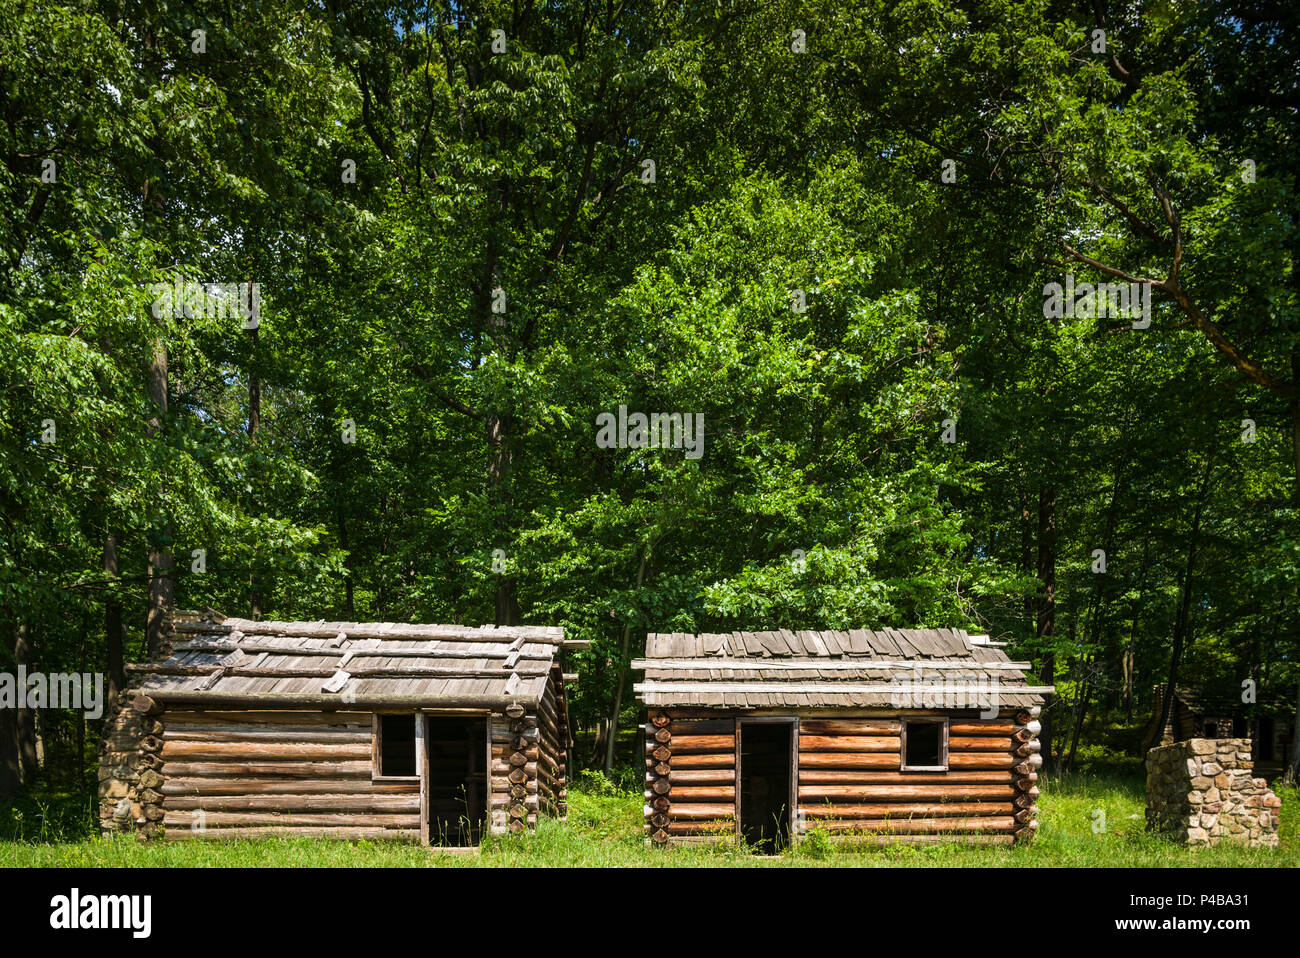 USA, New Jersey, Morristown, Parc historique national de Morristown, Jockey Hollow, camp d'hiver et cabines site utilisé par les soldats américains pendant la guerre de la Révolution américaine Banque D'Images